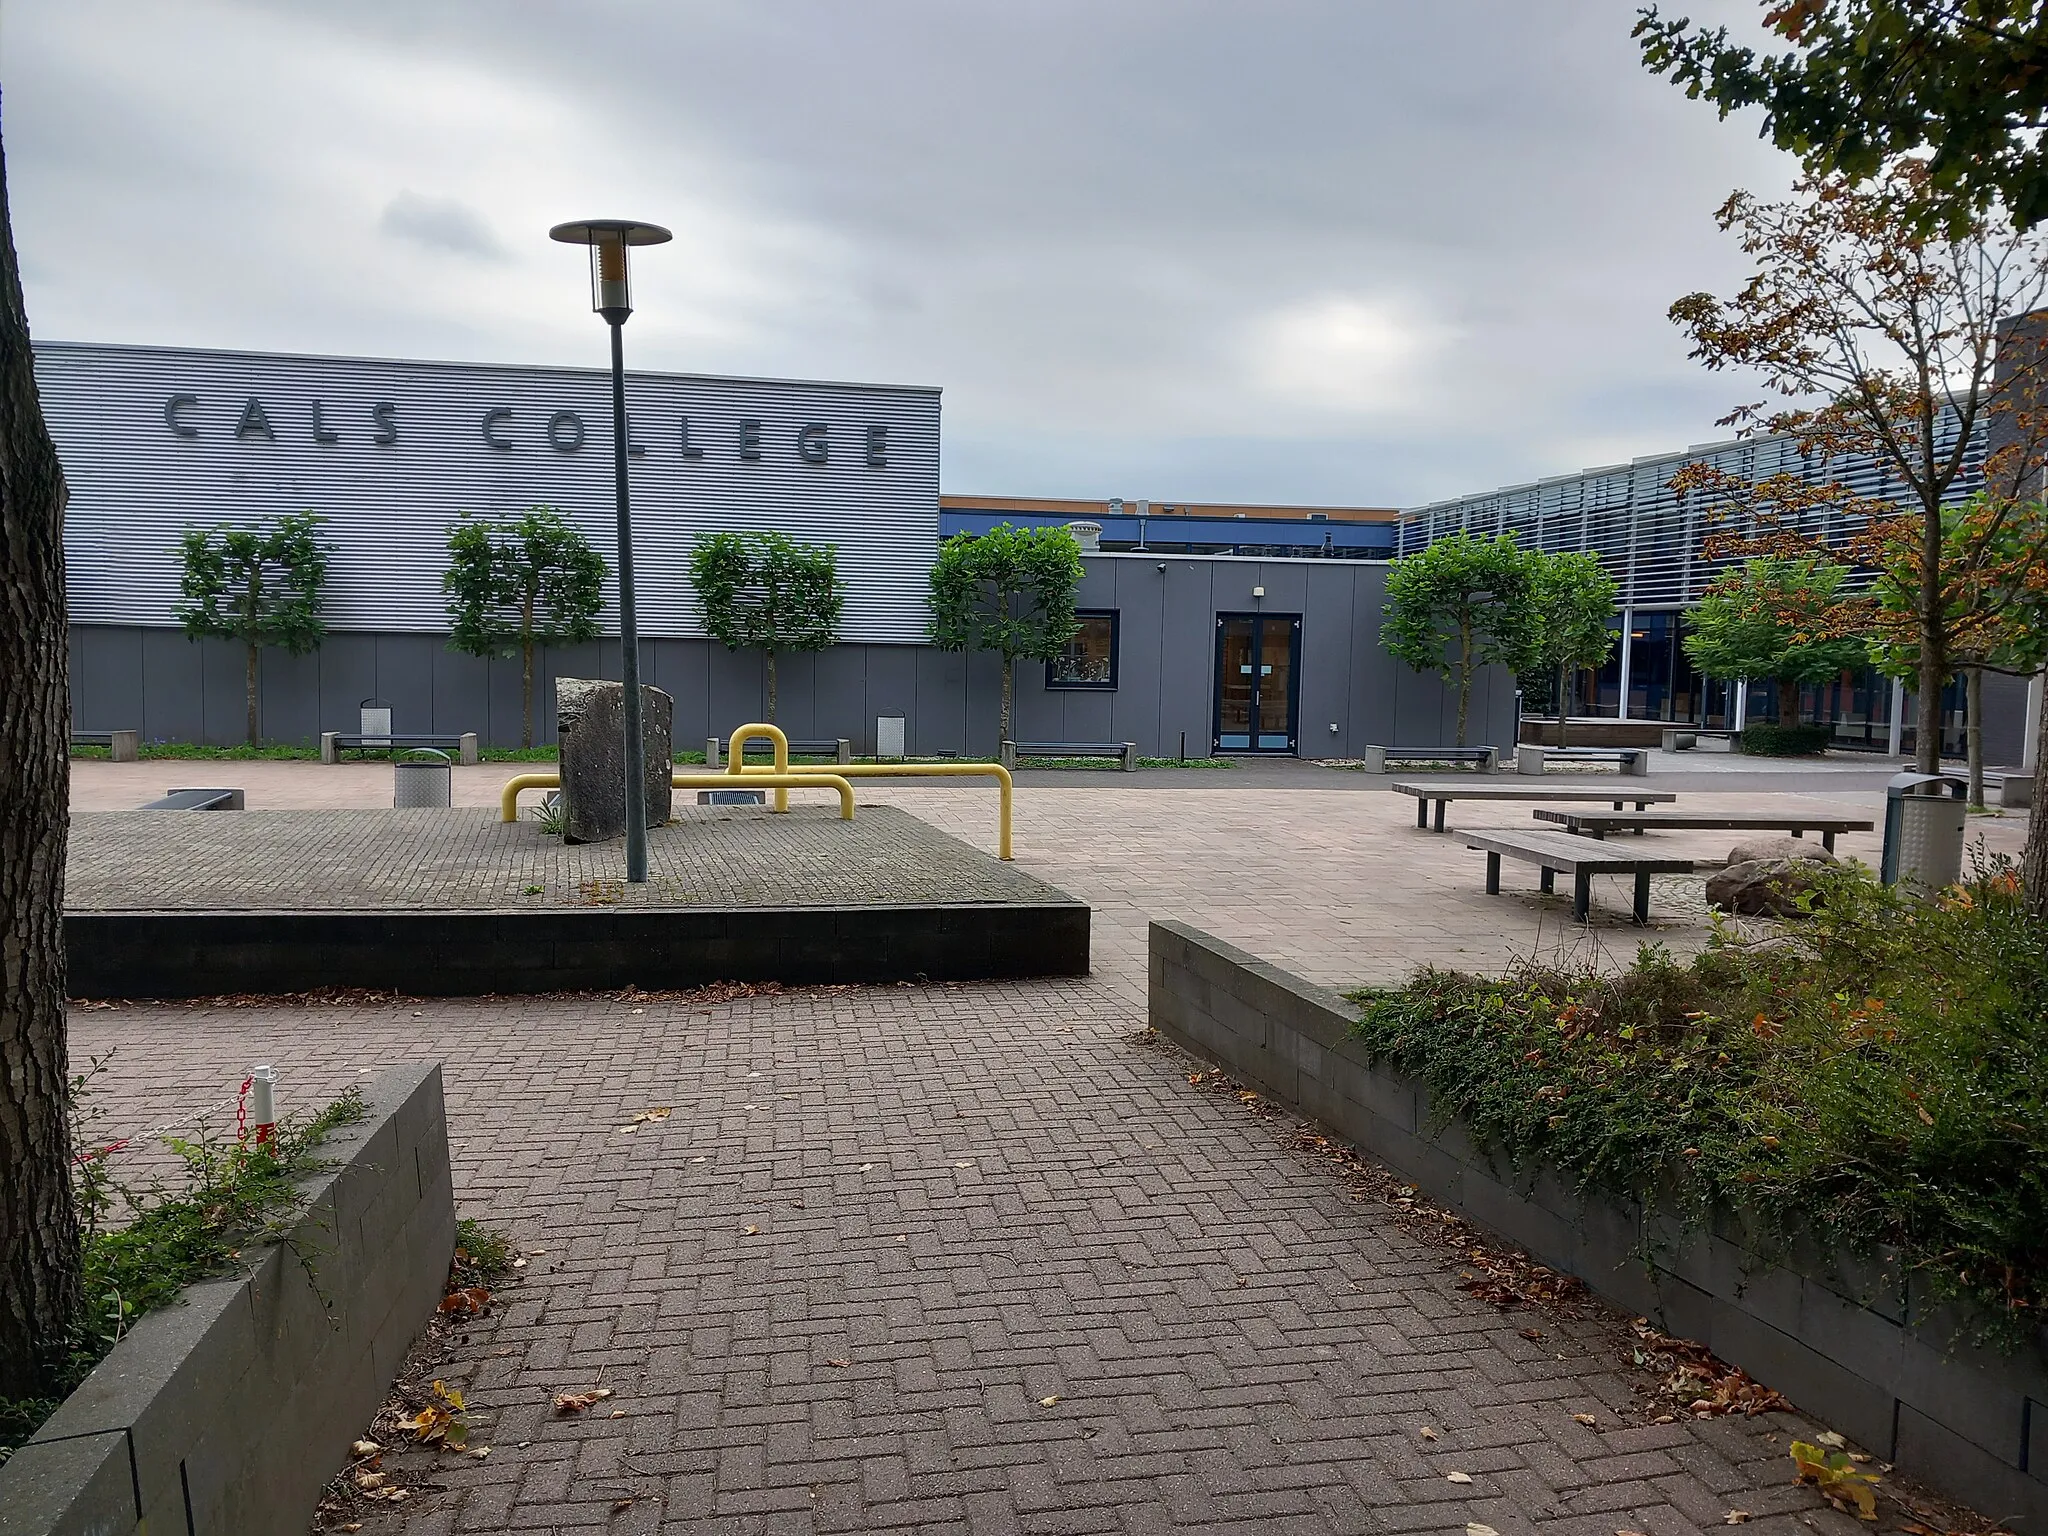 Photo showing: View of the Cals College School in Nieuwegein, The Netherlands